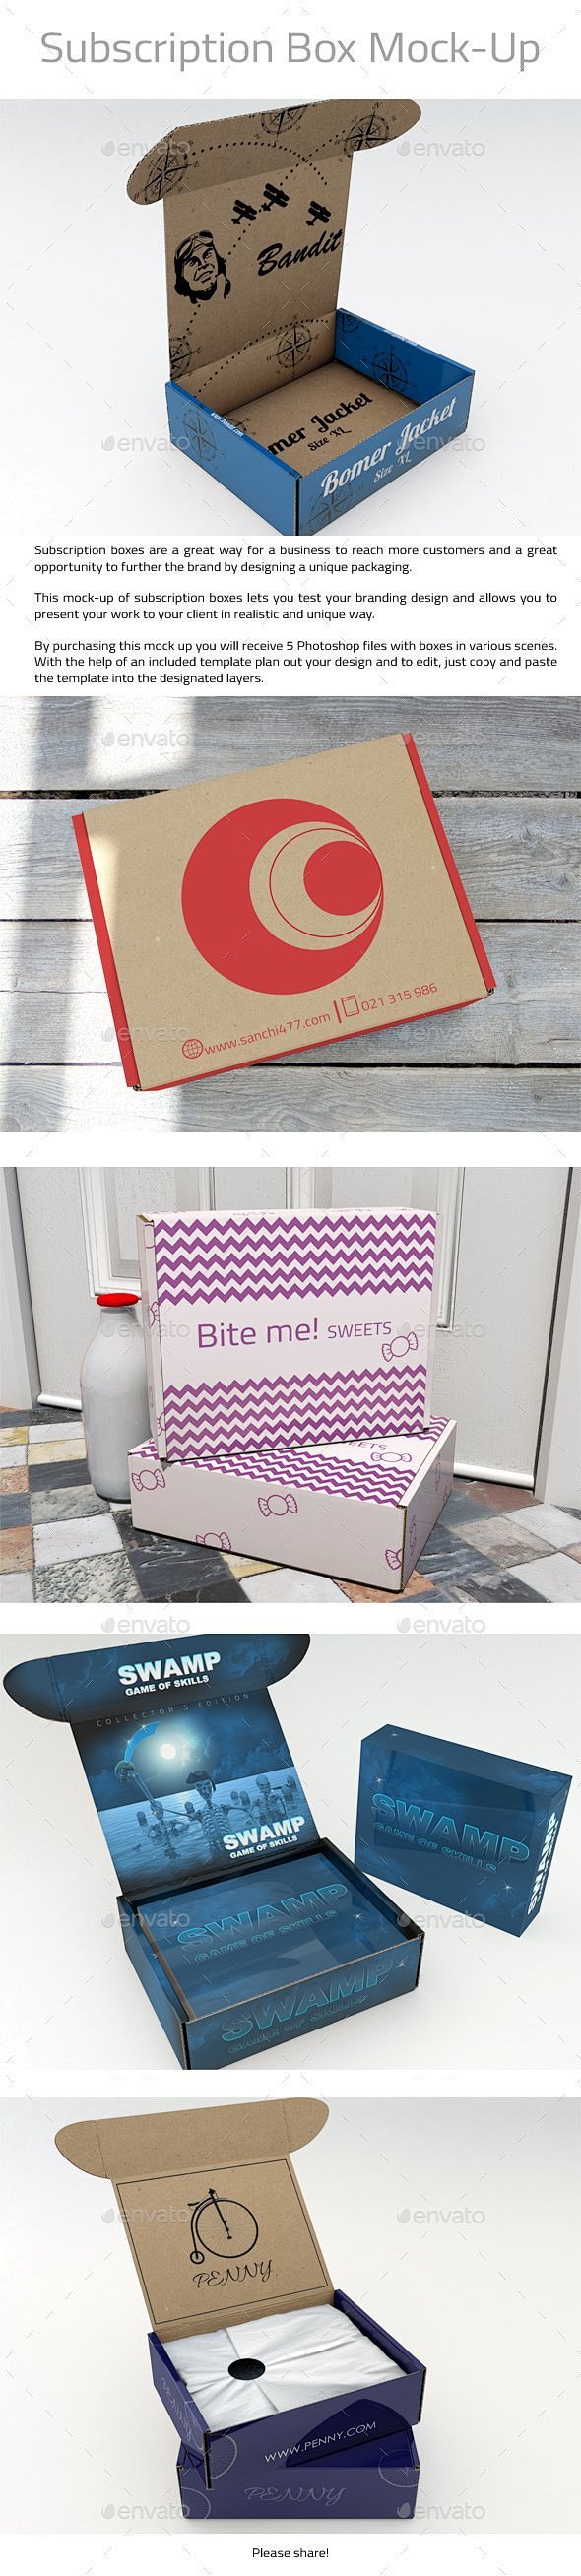 快递货运包装盒瓦楞板包裹纸盒飞机盒展示效...